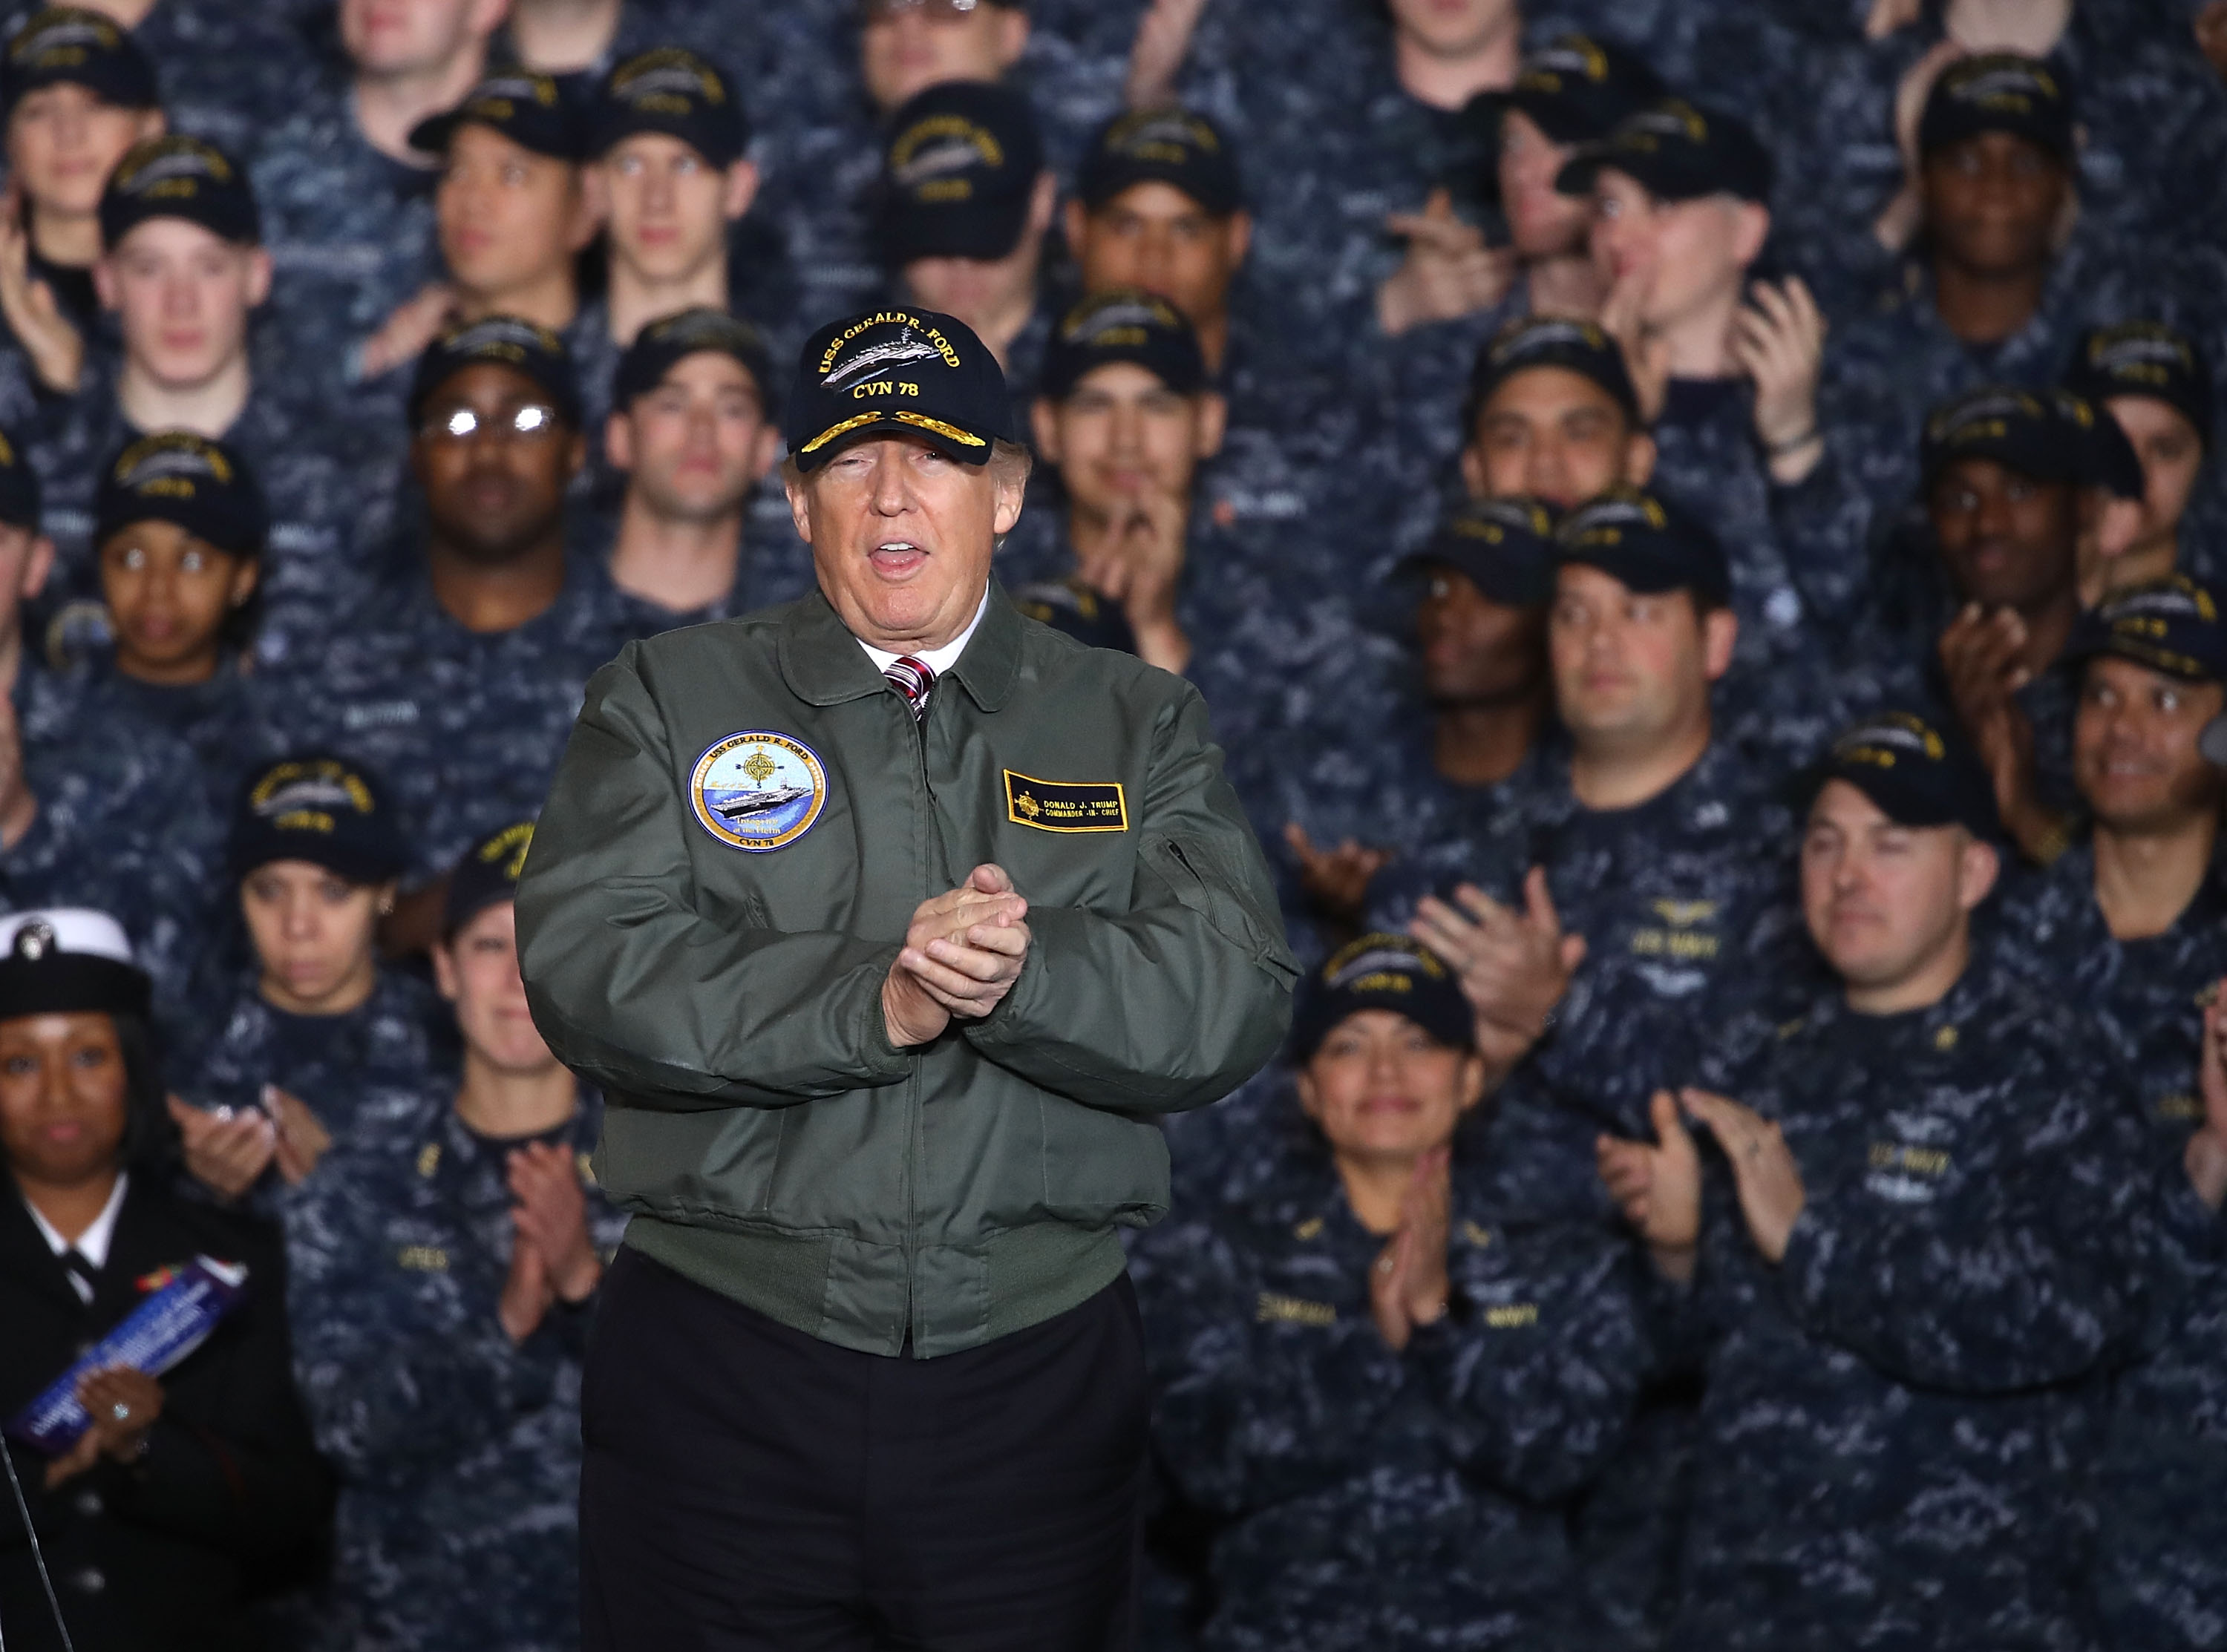 President Trump speaks to members of the U.S. Navy.